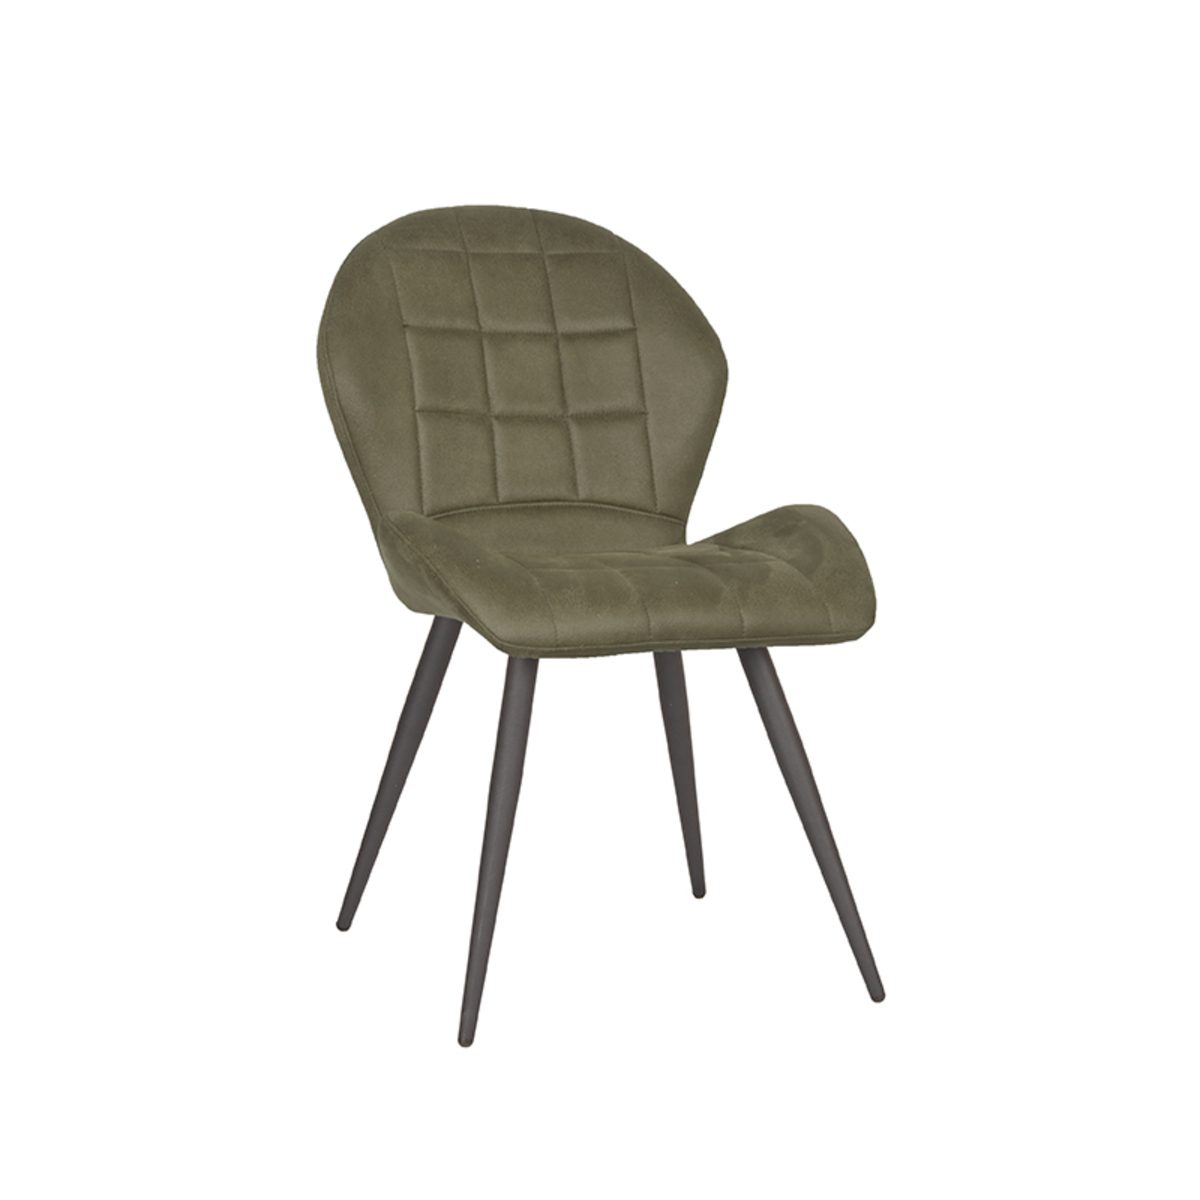 LABEL51 jídelní židle SIL armádní zelená Color: Army green